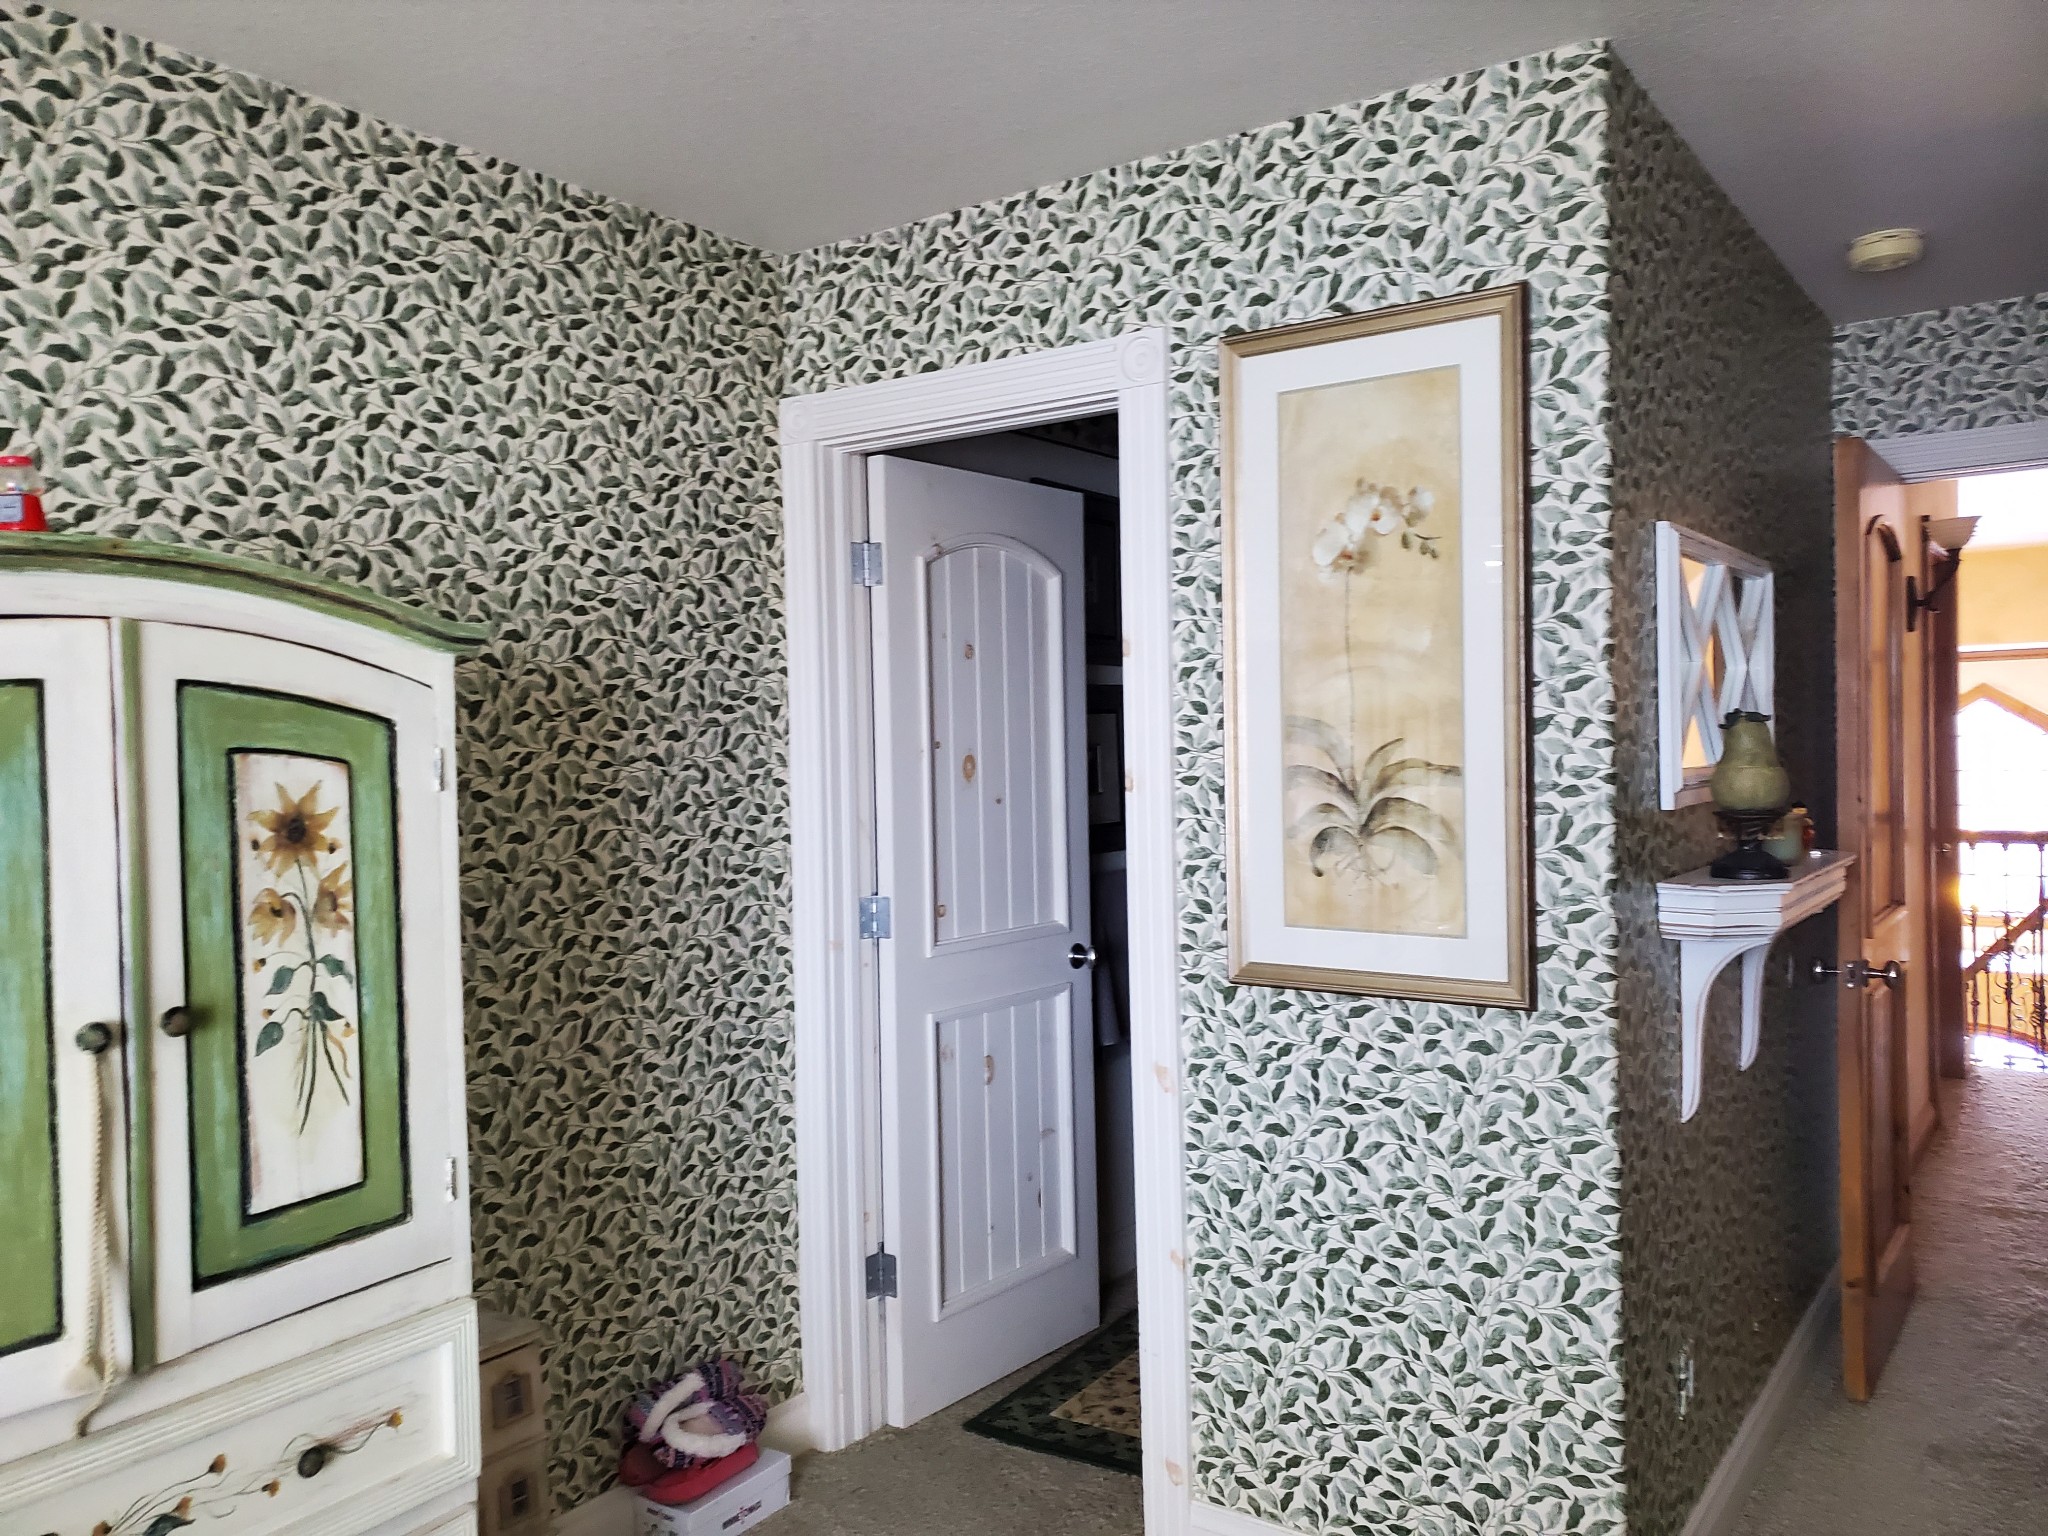 14 Best Wallpaper Installers - Denver CO | HomeAdvisor Wallcovering Hangers